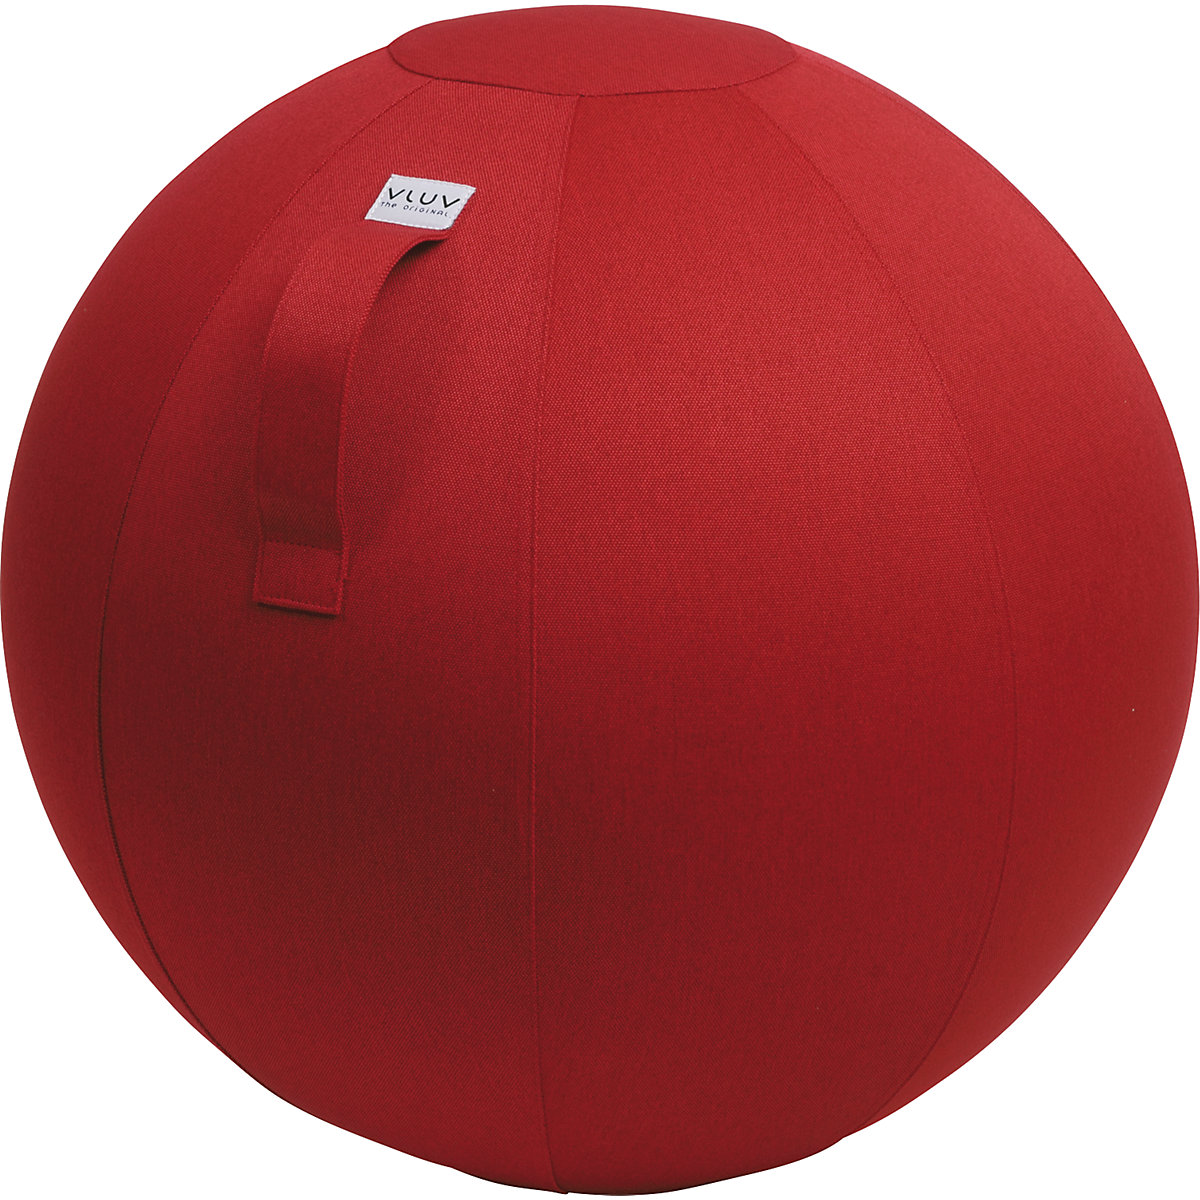 Piłka do siedzenia LEIV – VLUV, pokrowiec z tkaniny o wyglądzie płótna, 500 – 550 mm, rubinowo-czerwona-8